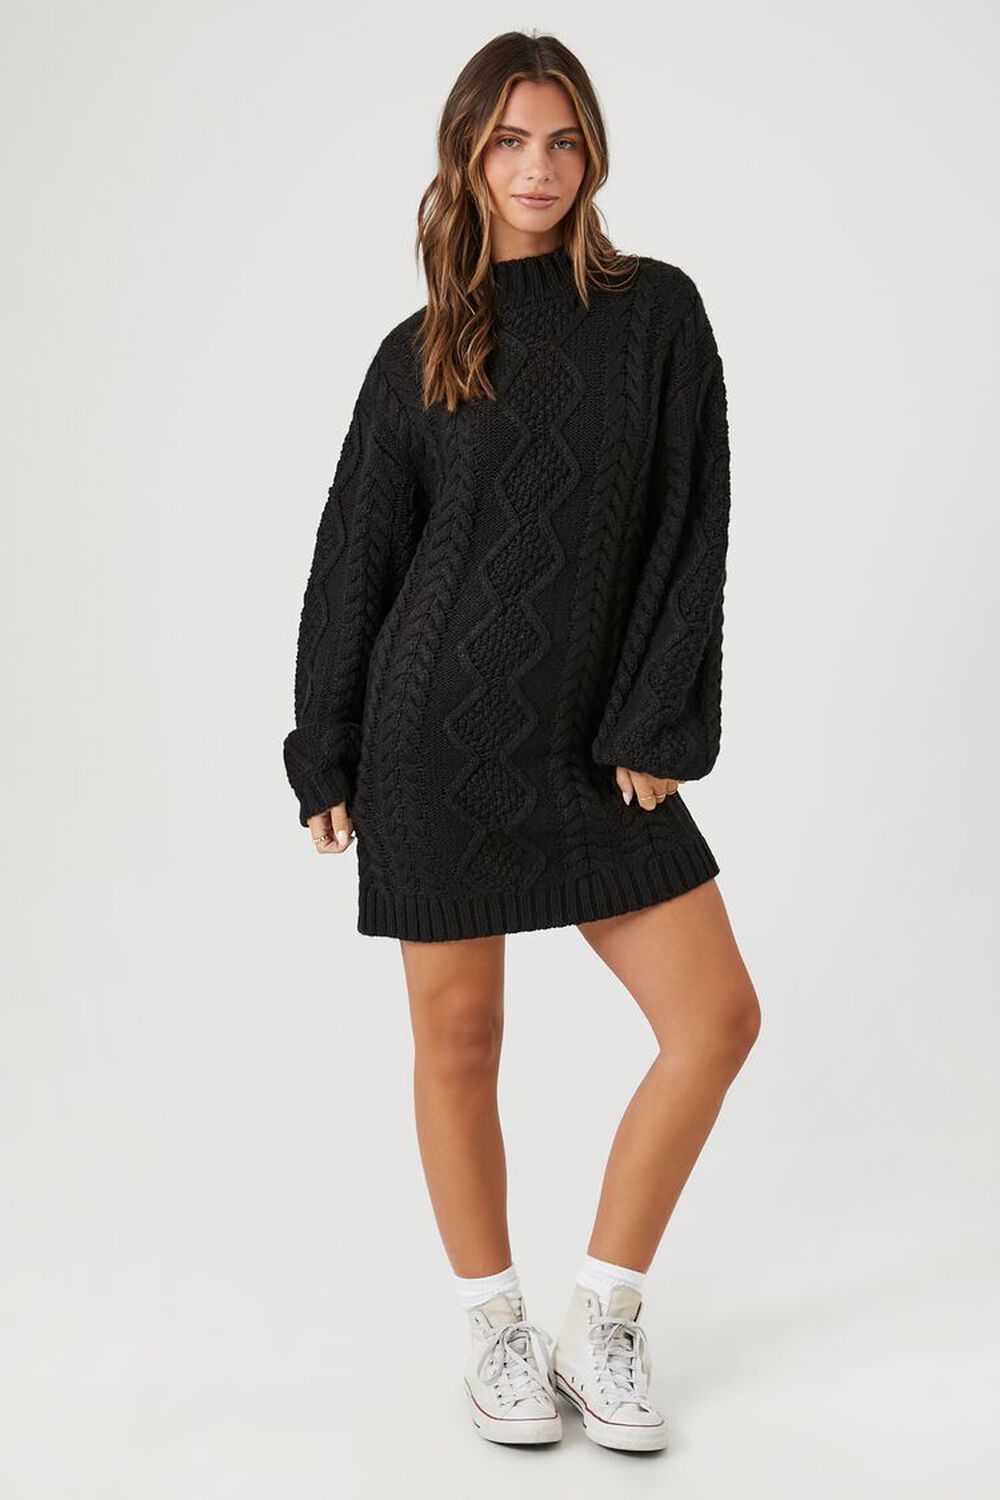 BLACK Cable Knit Sweater Mini Dress, image 1